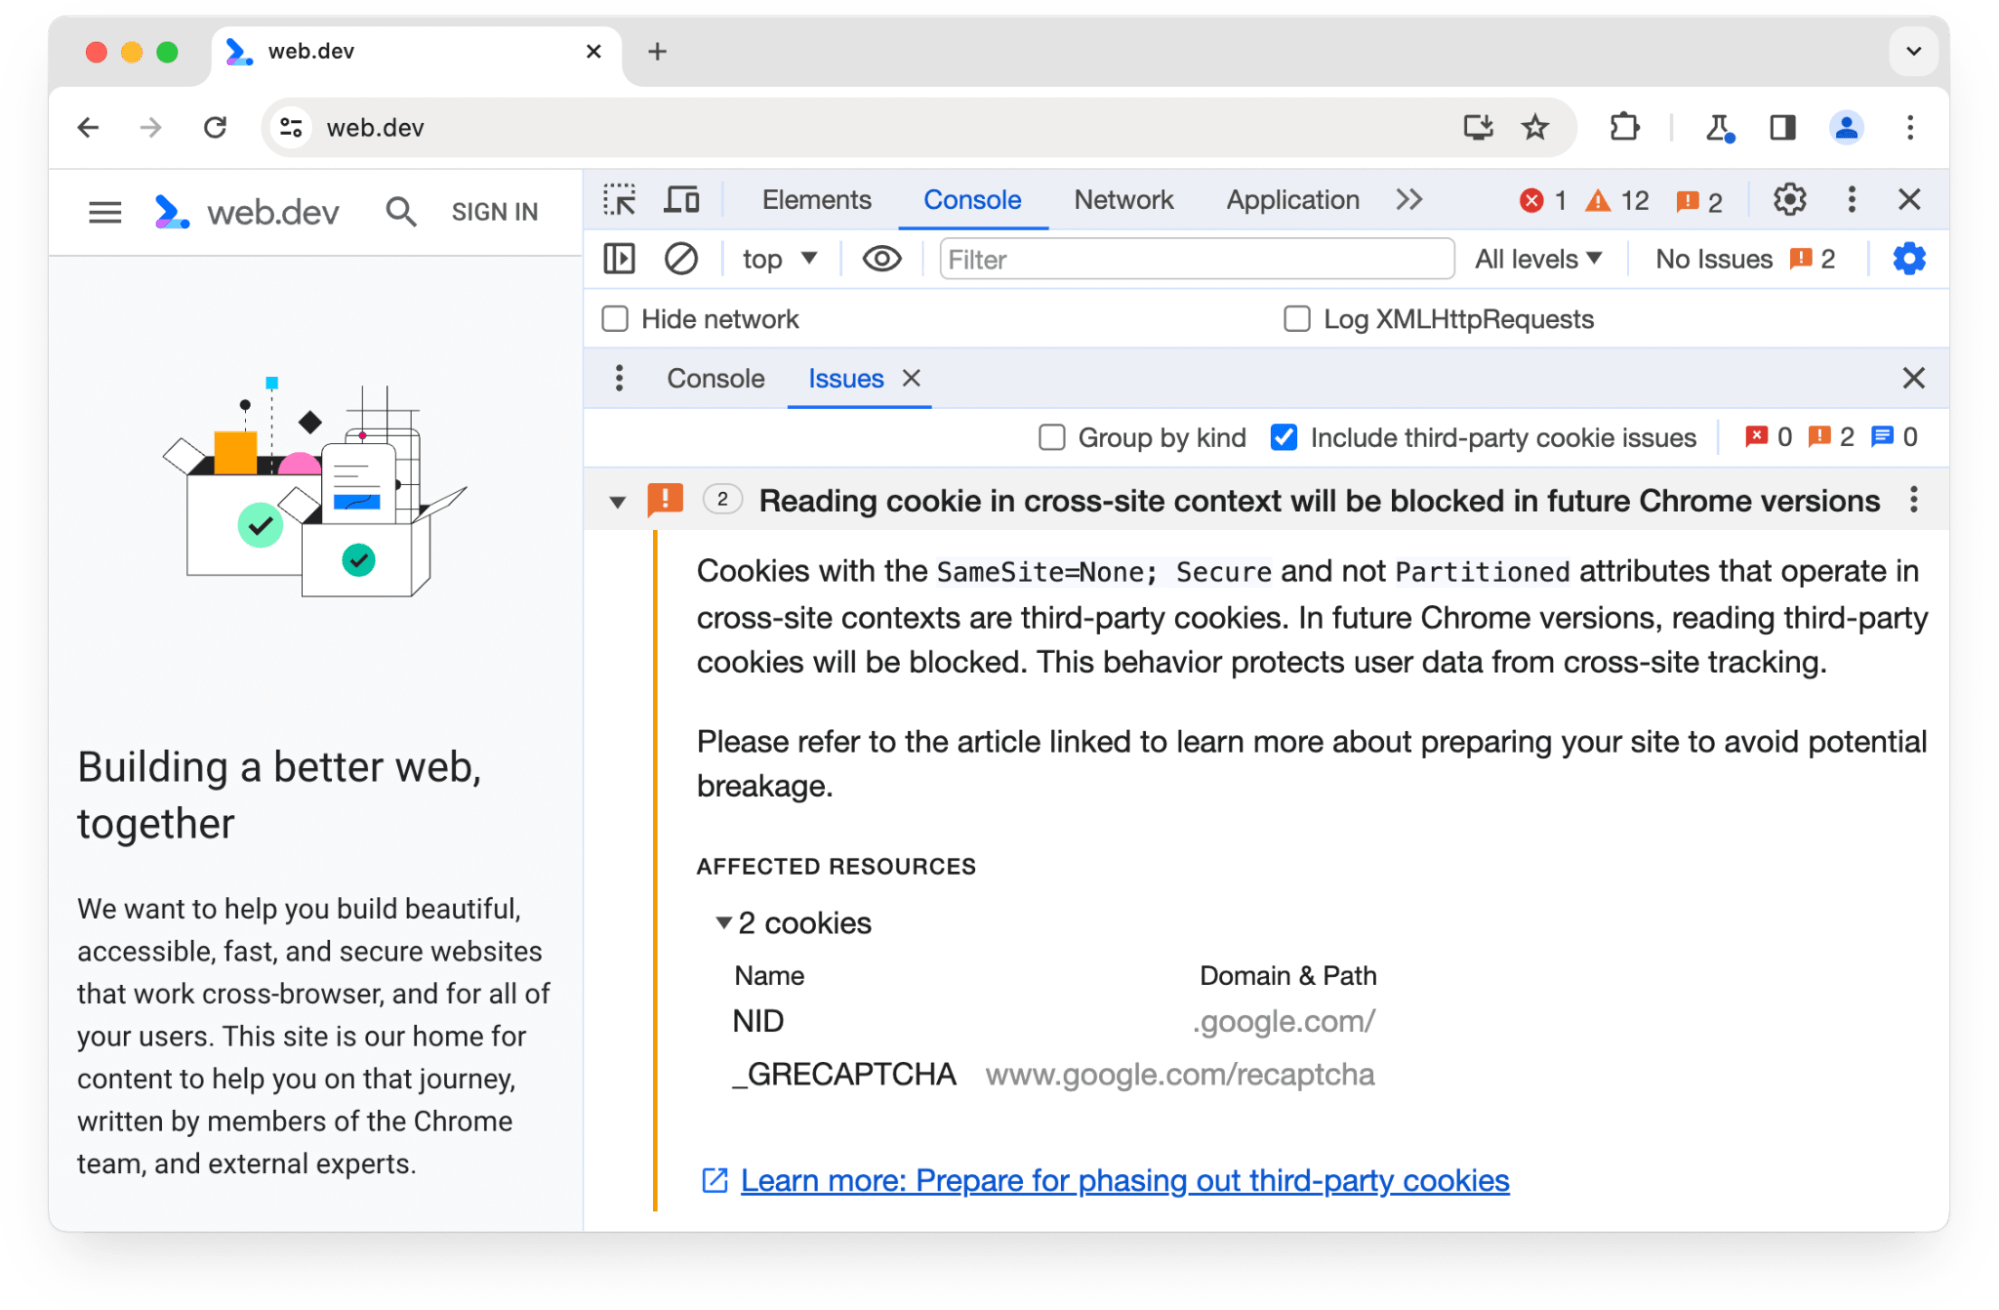 향후 Chrome 버전에서 차단될 서드 파티 쿠키 2개에 관한 Chrome DevTools의 문제 패널 경고